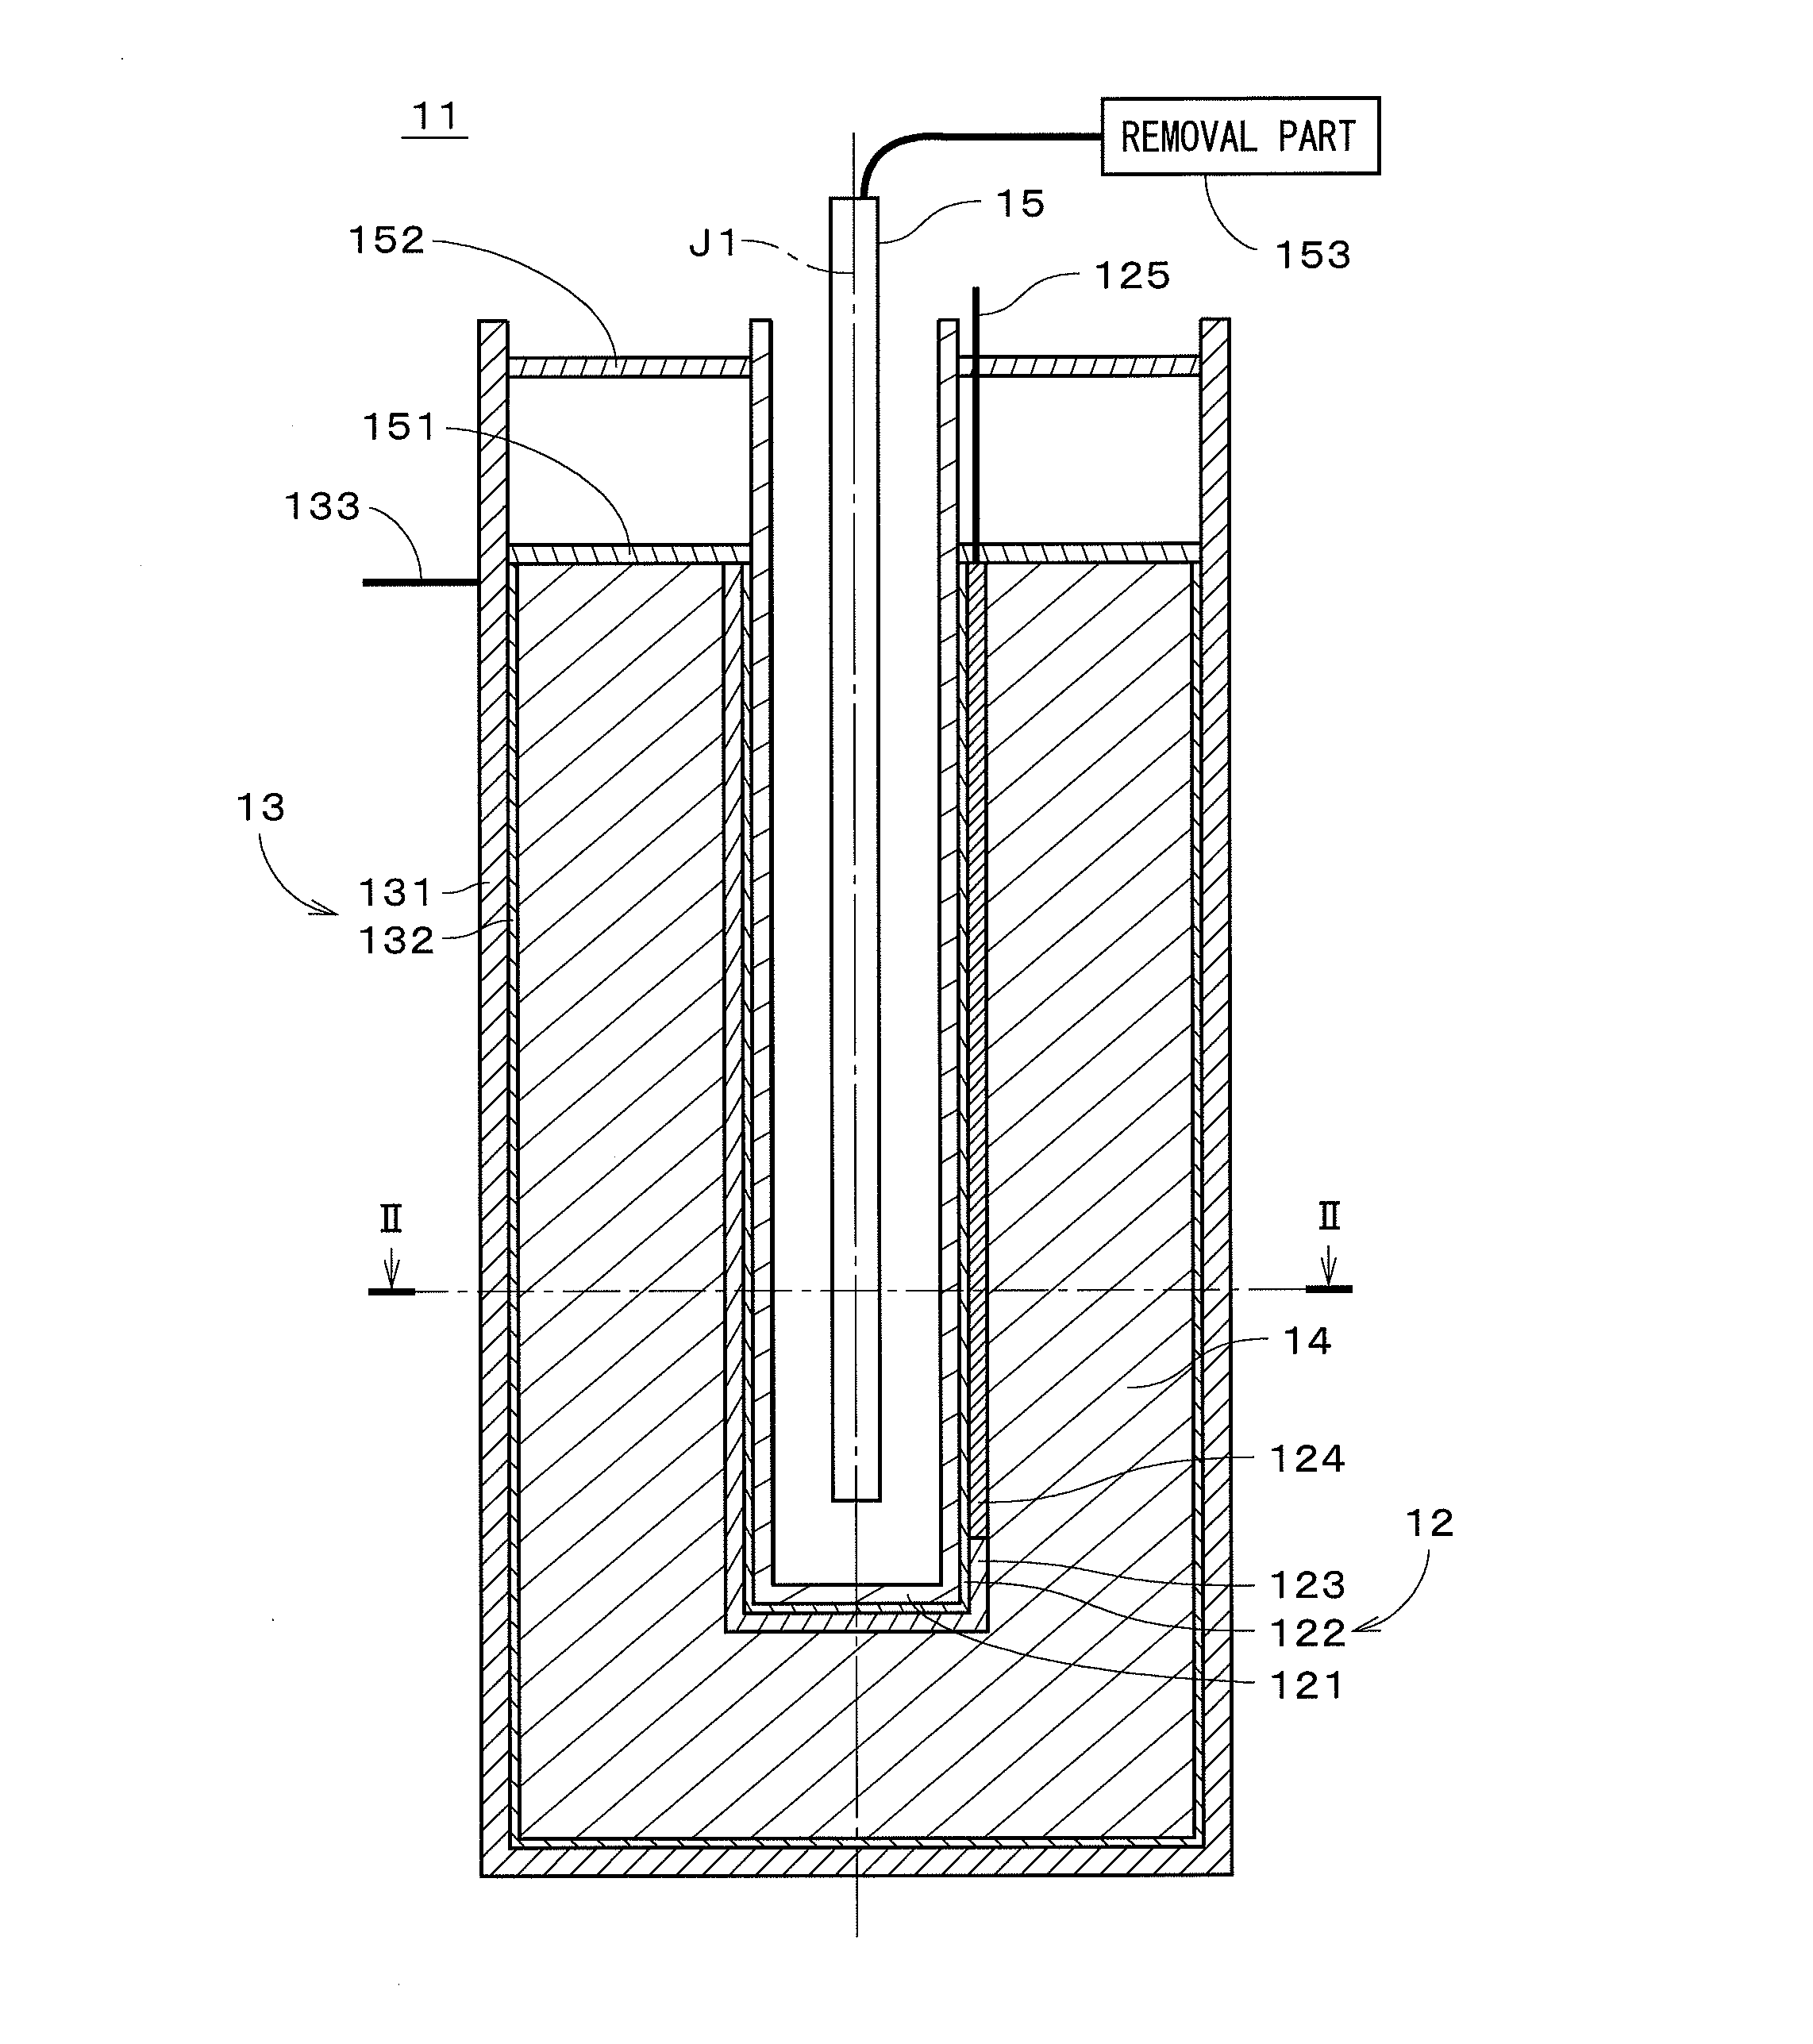 Metal-air battery